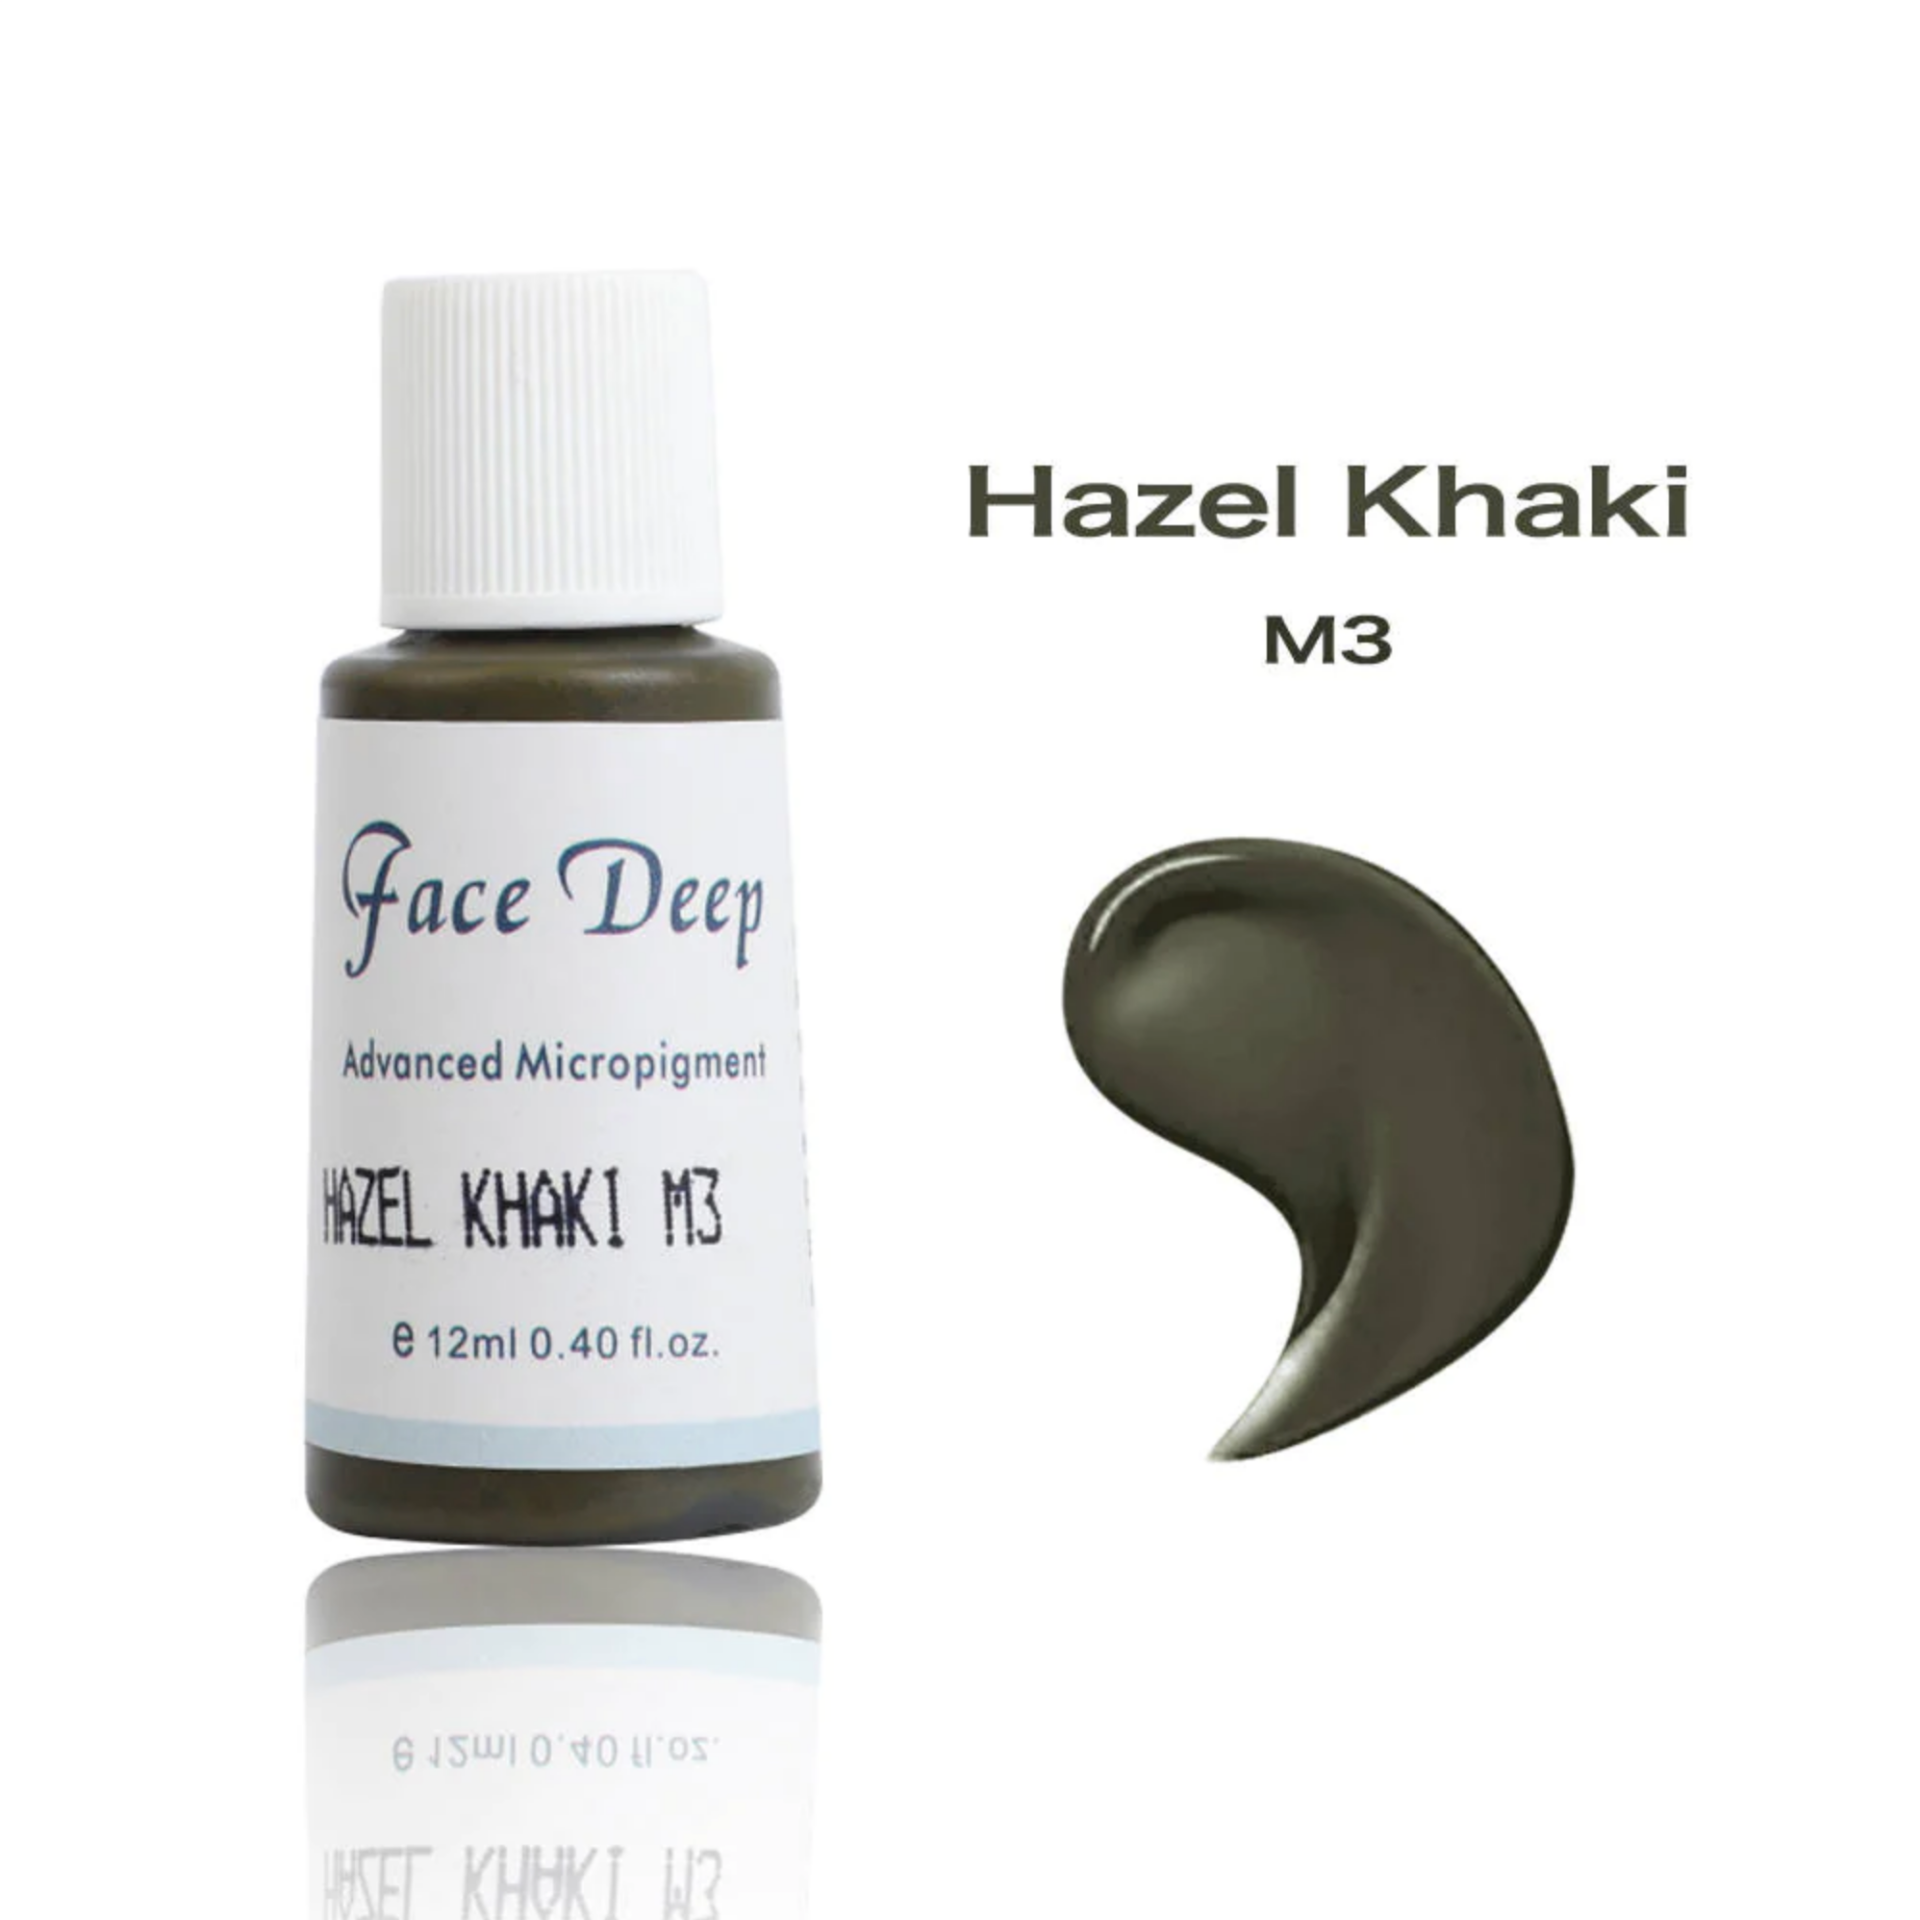 Face Deep M3 Hazel Khaki Kaş için Kalıcı Makyaj Boyası 12ml